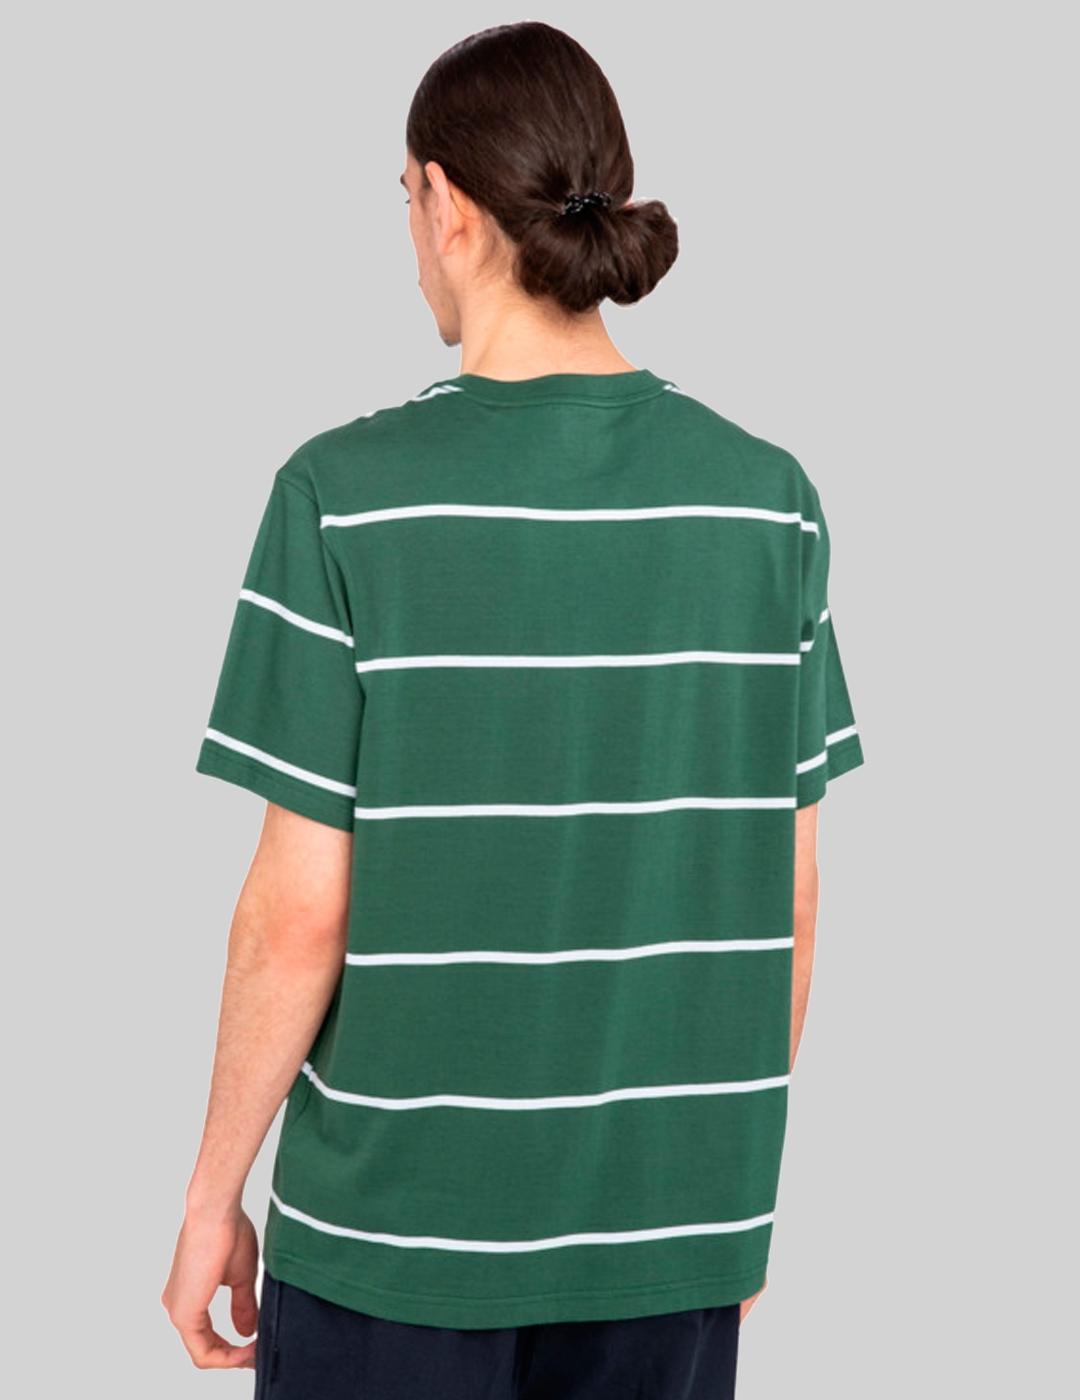 Camiseta ELEMENT BASIC POCKET LABEL- Rifle Green